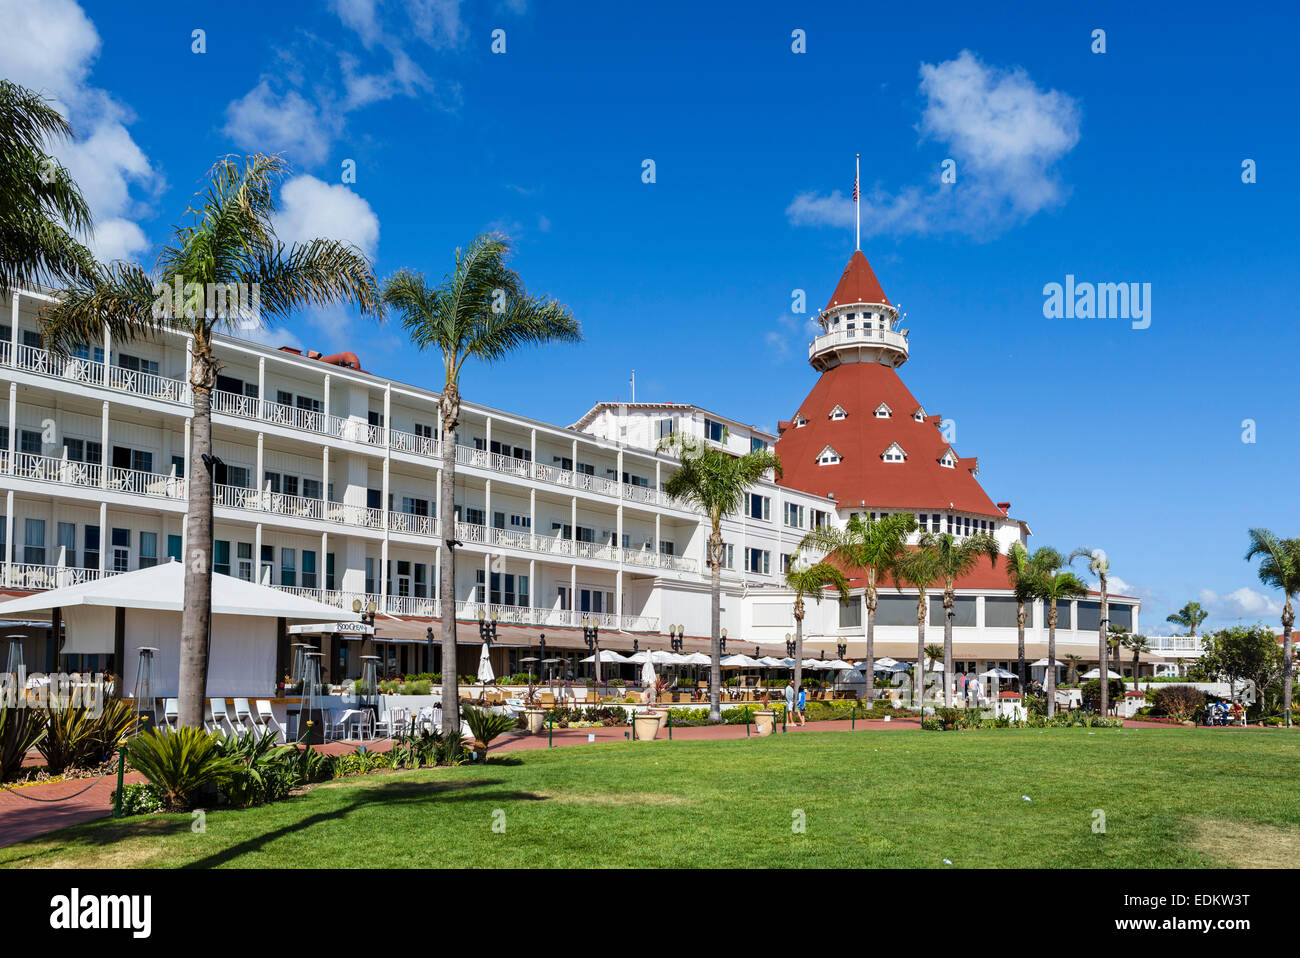 The Hotel del Coronado, Coronado Beach, San Diego, California, USA Stock Photo